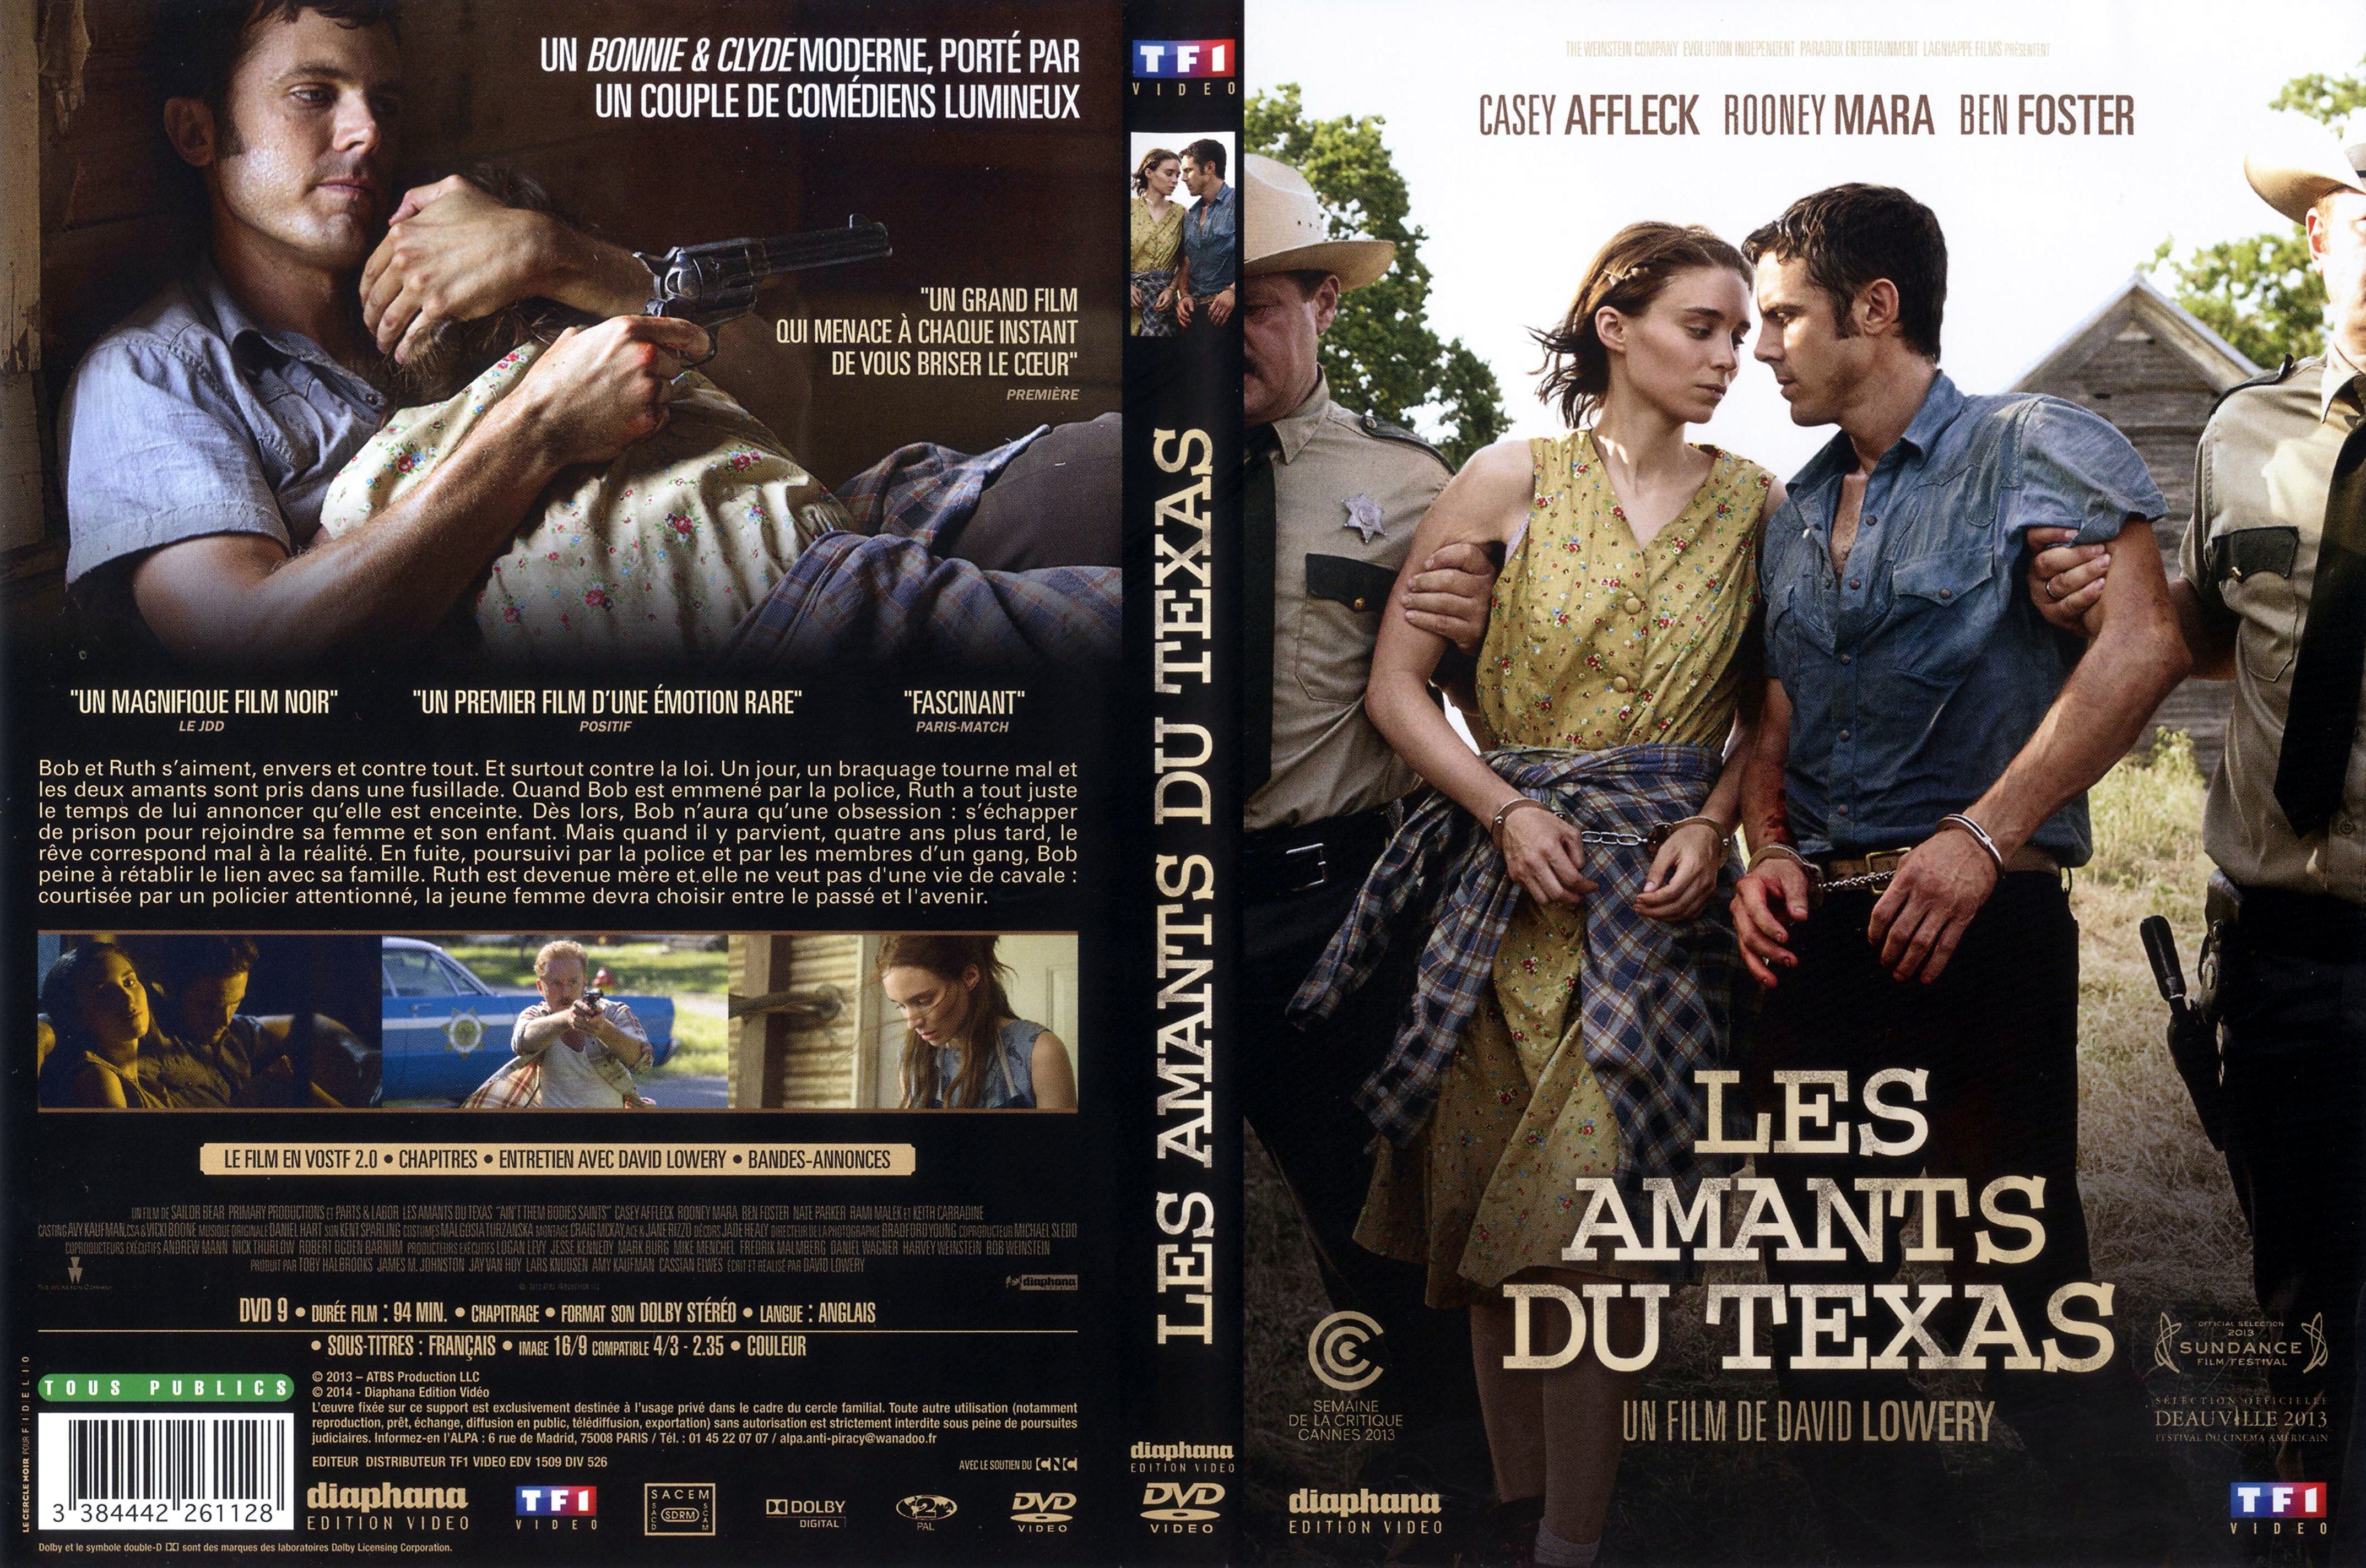 Jaquette DVD Les amants du texas